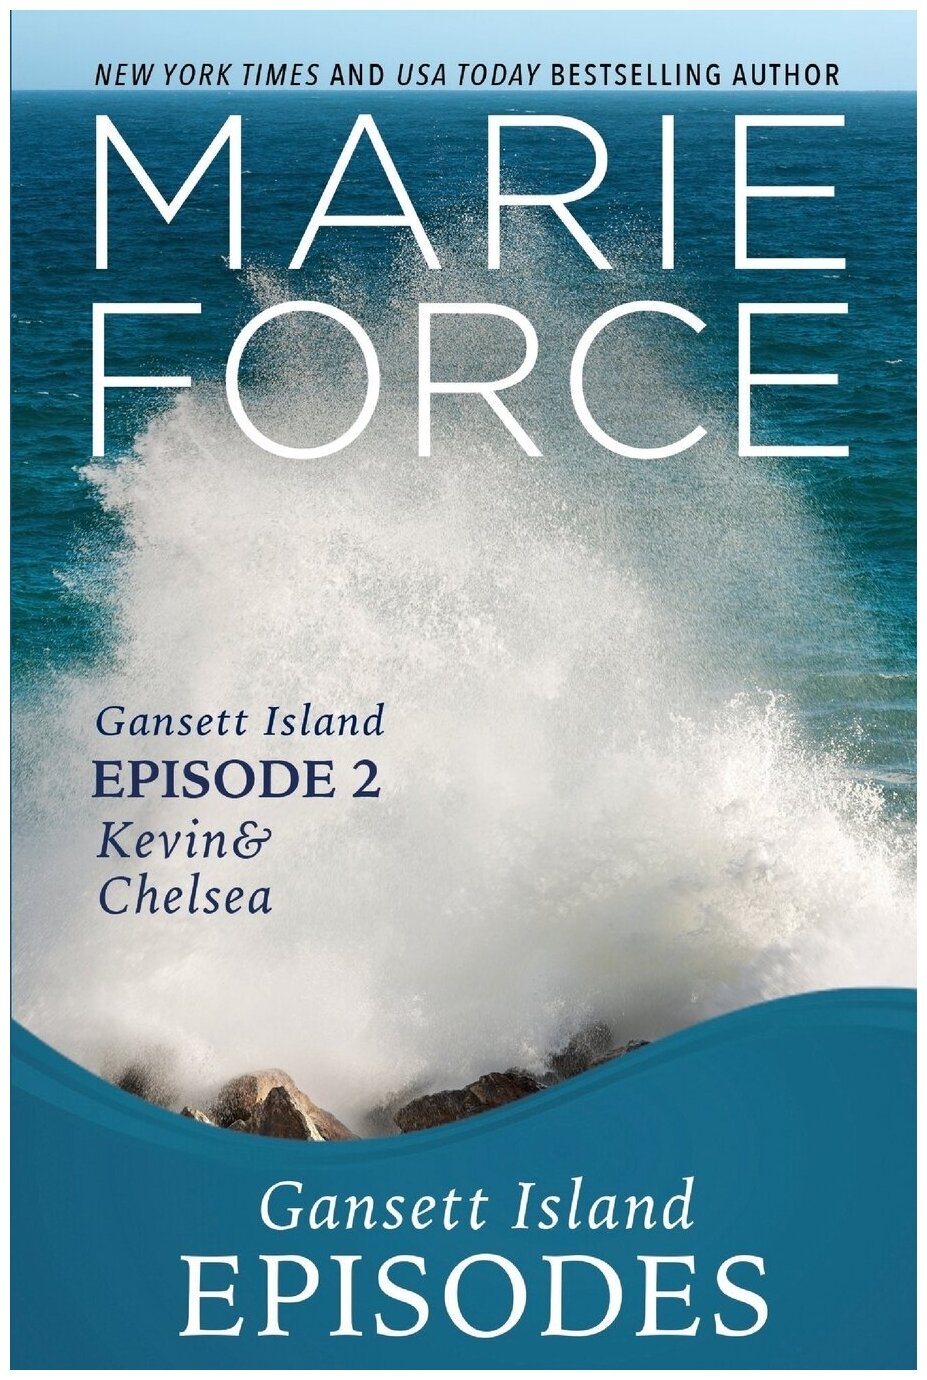 Gansett Island Episode 2. Kevin & Chelsea